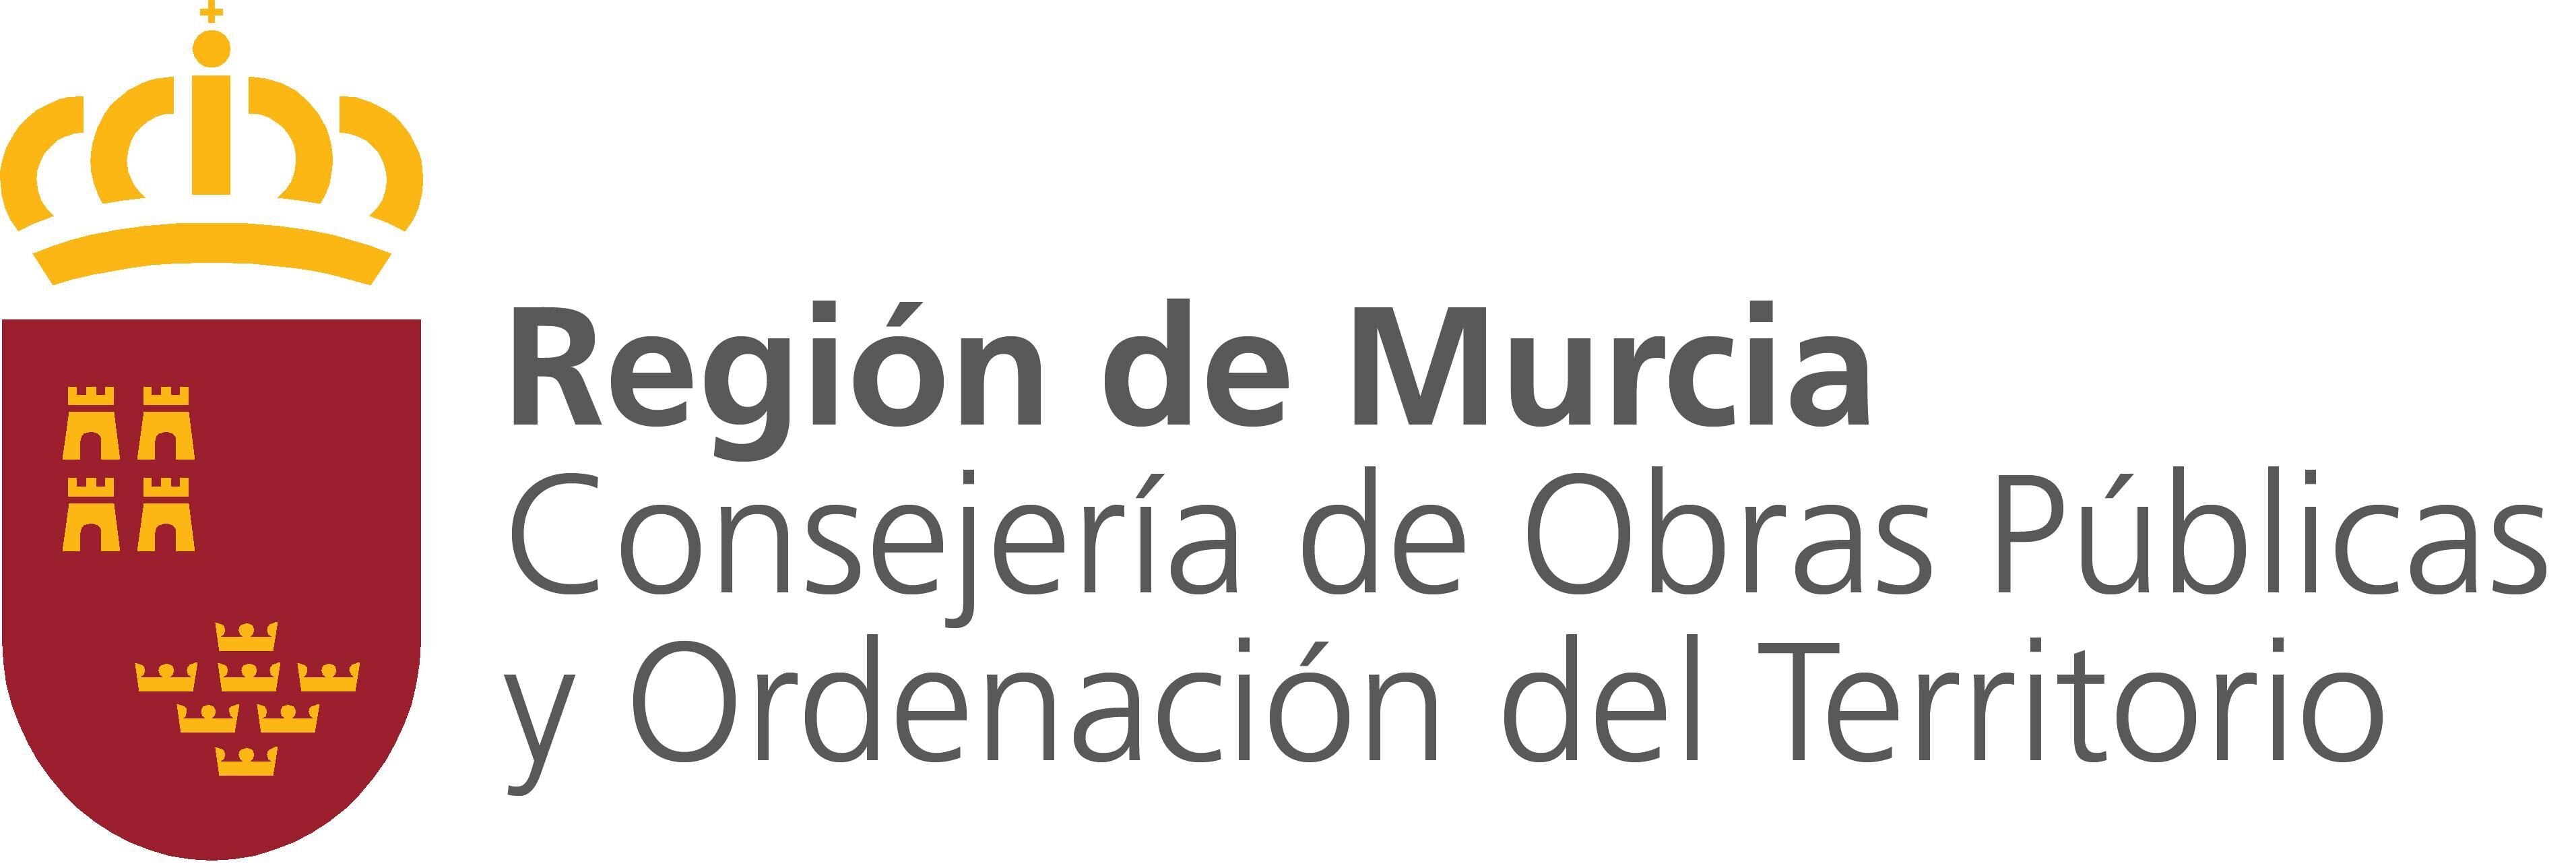 Logo de la Consejería de Obras Públicas de Murcia